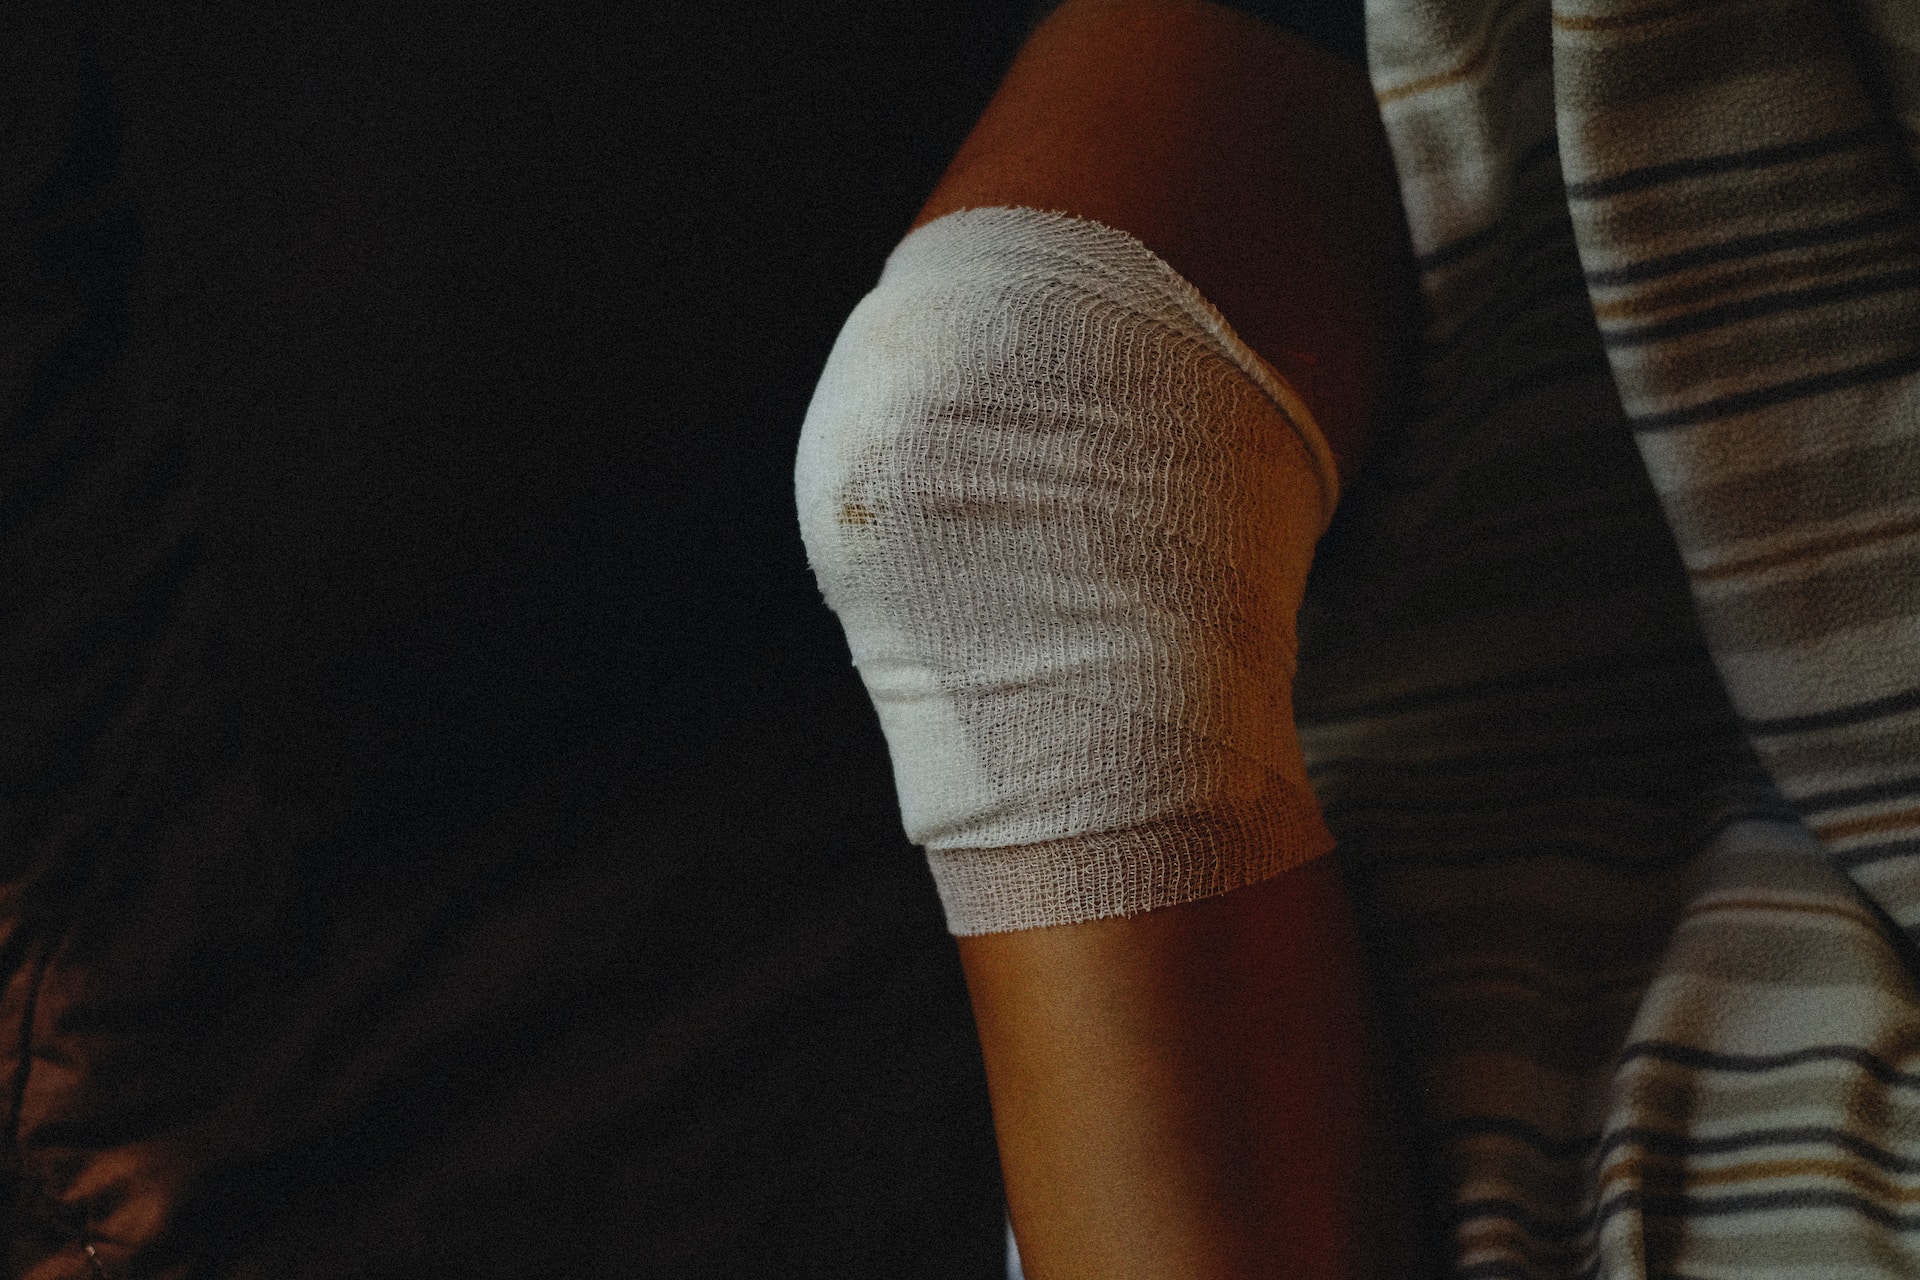 A bandaged arm